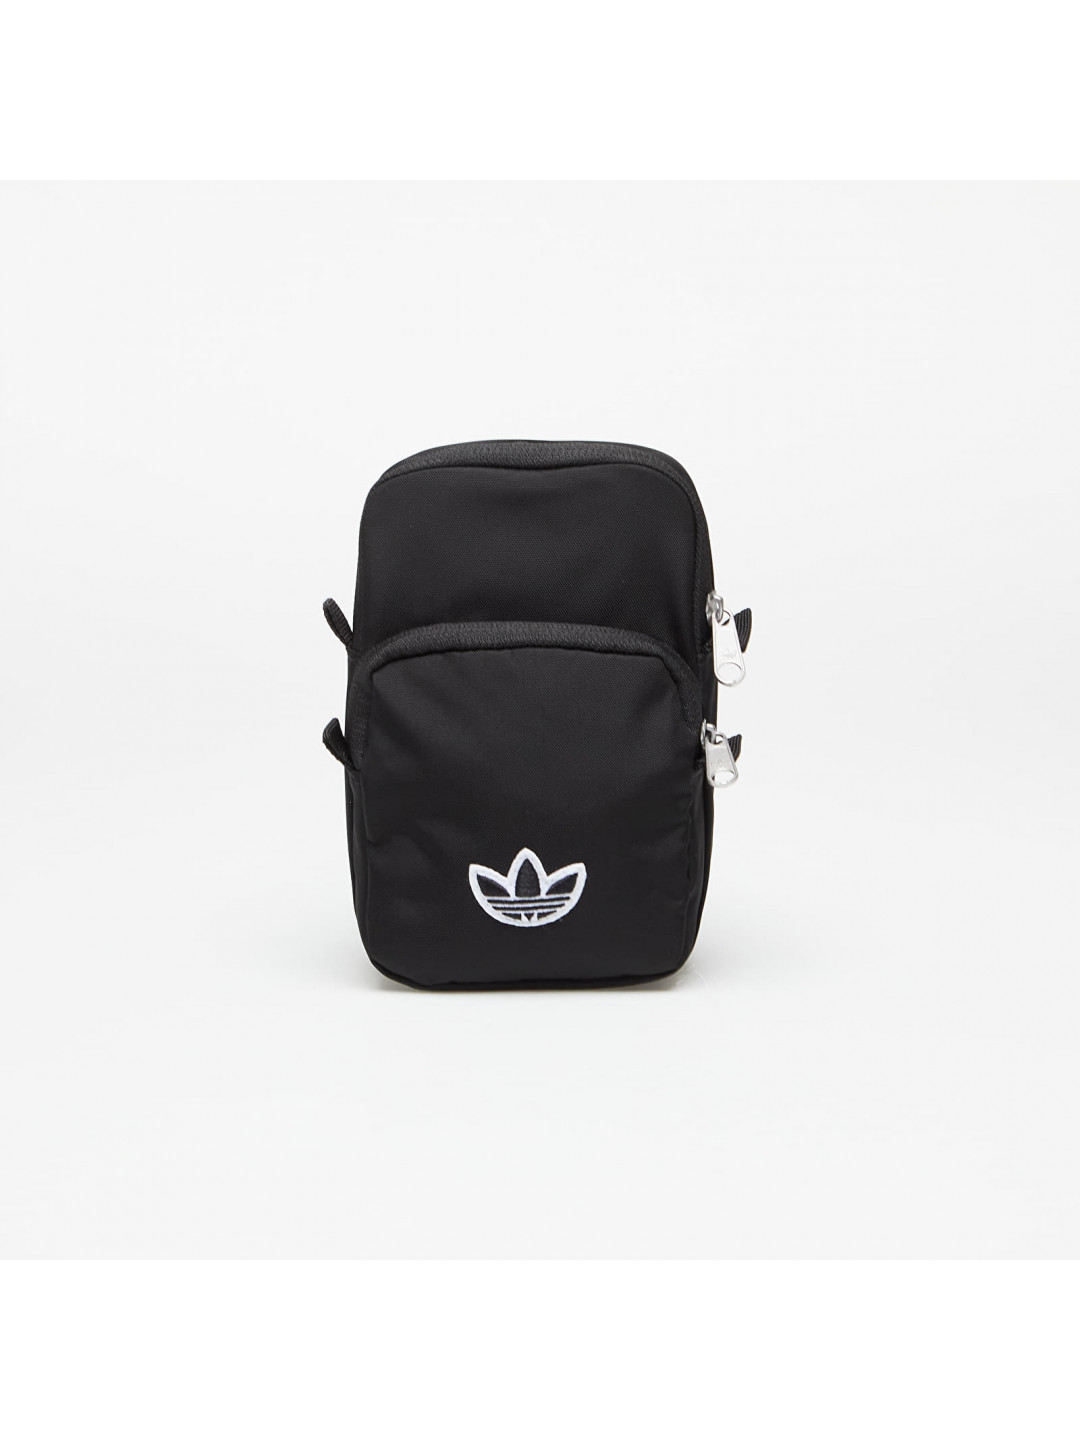 Adidas Originals Premium Essential Festival Bag Black